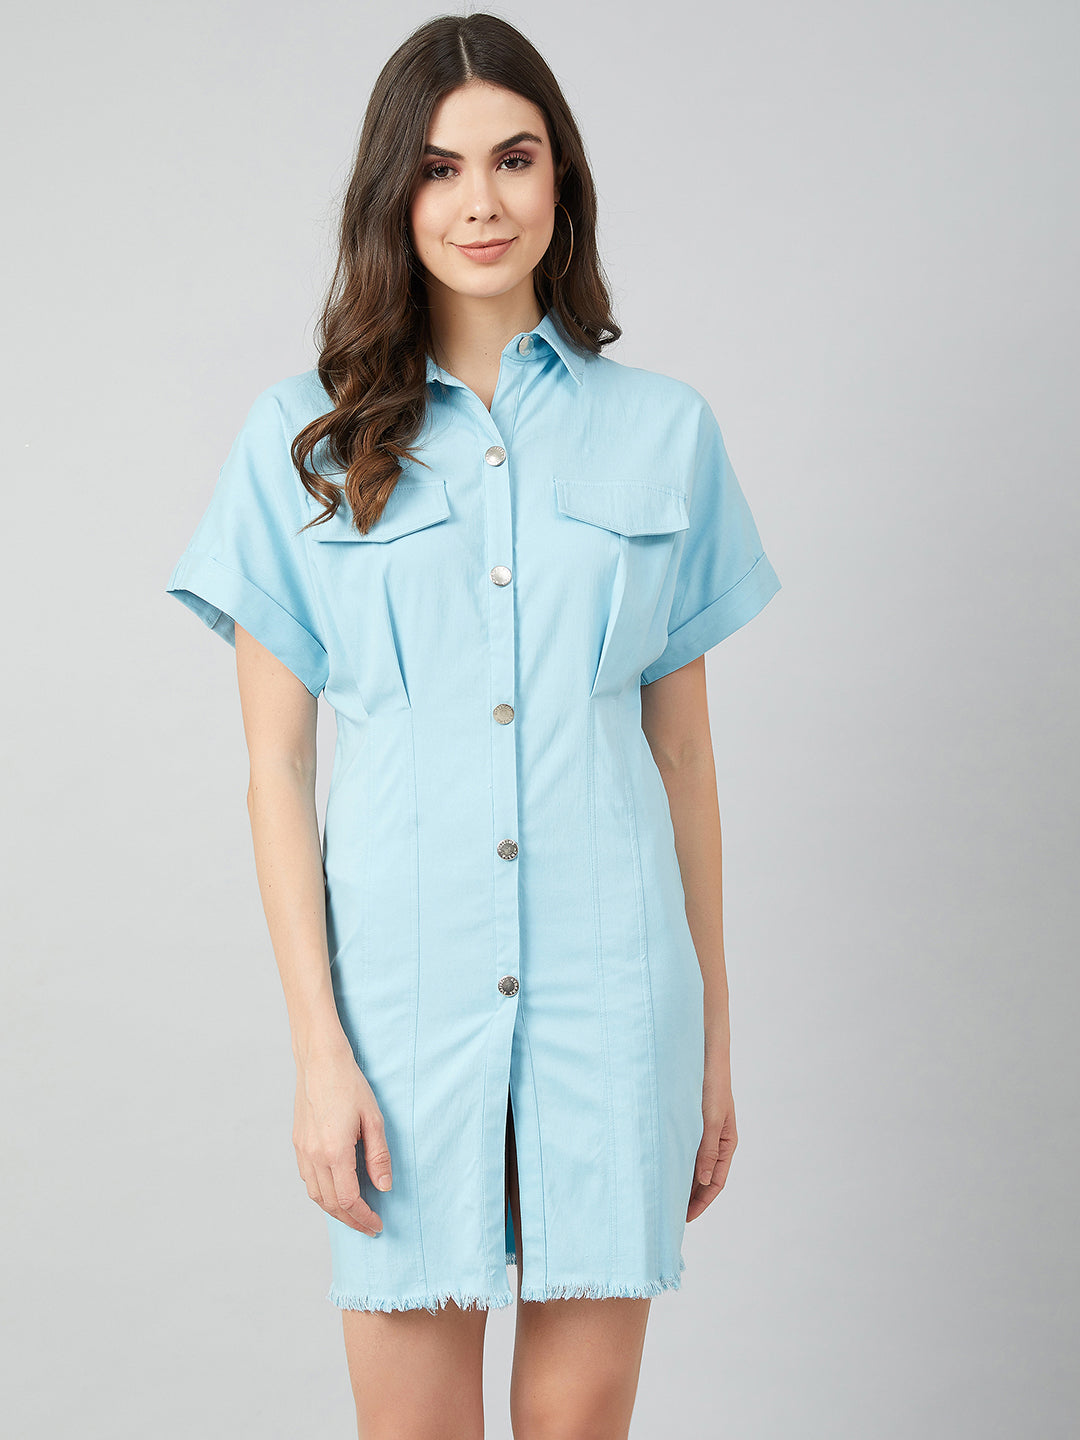 Athena Women Blue Solid Shirt Dress With Frayed Hem - Athena Lifestyle